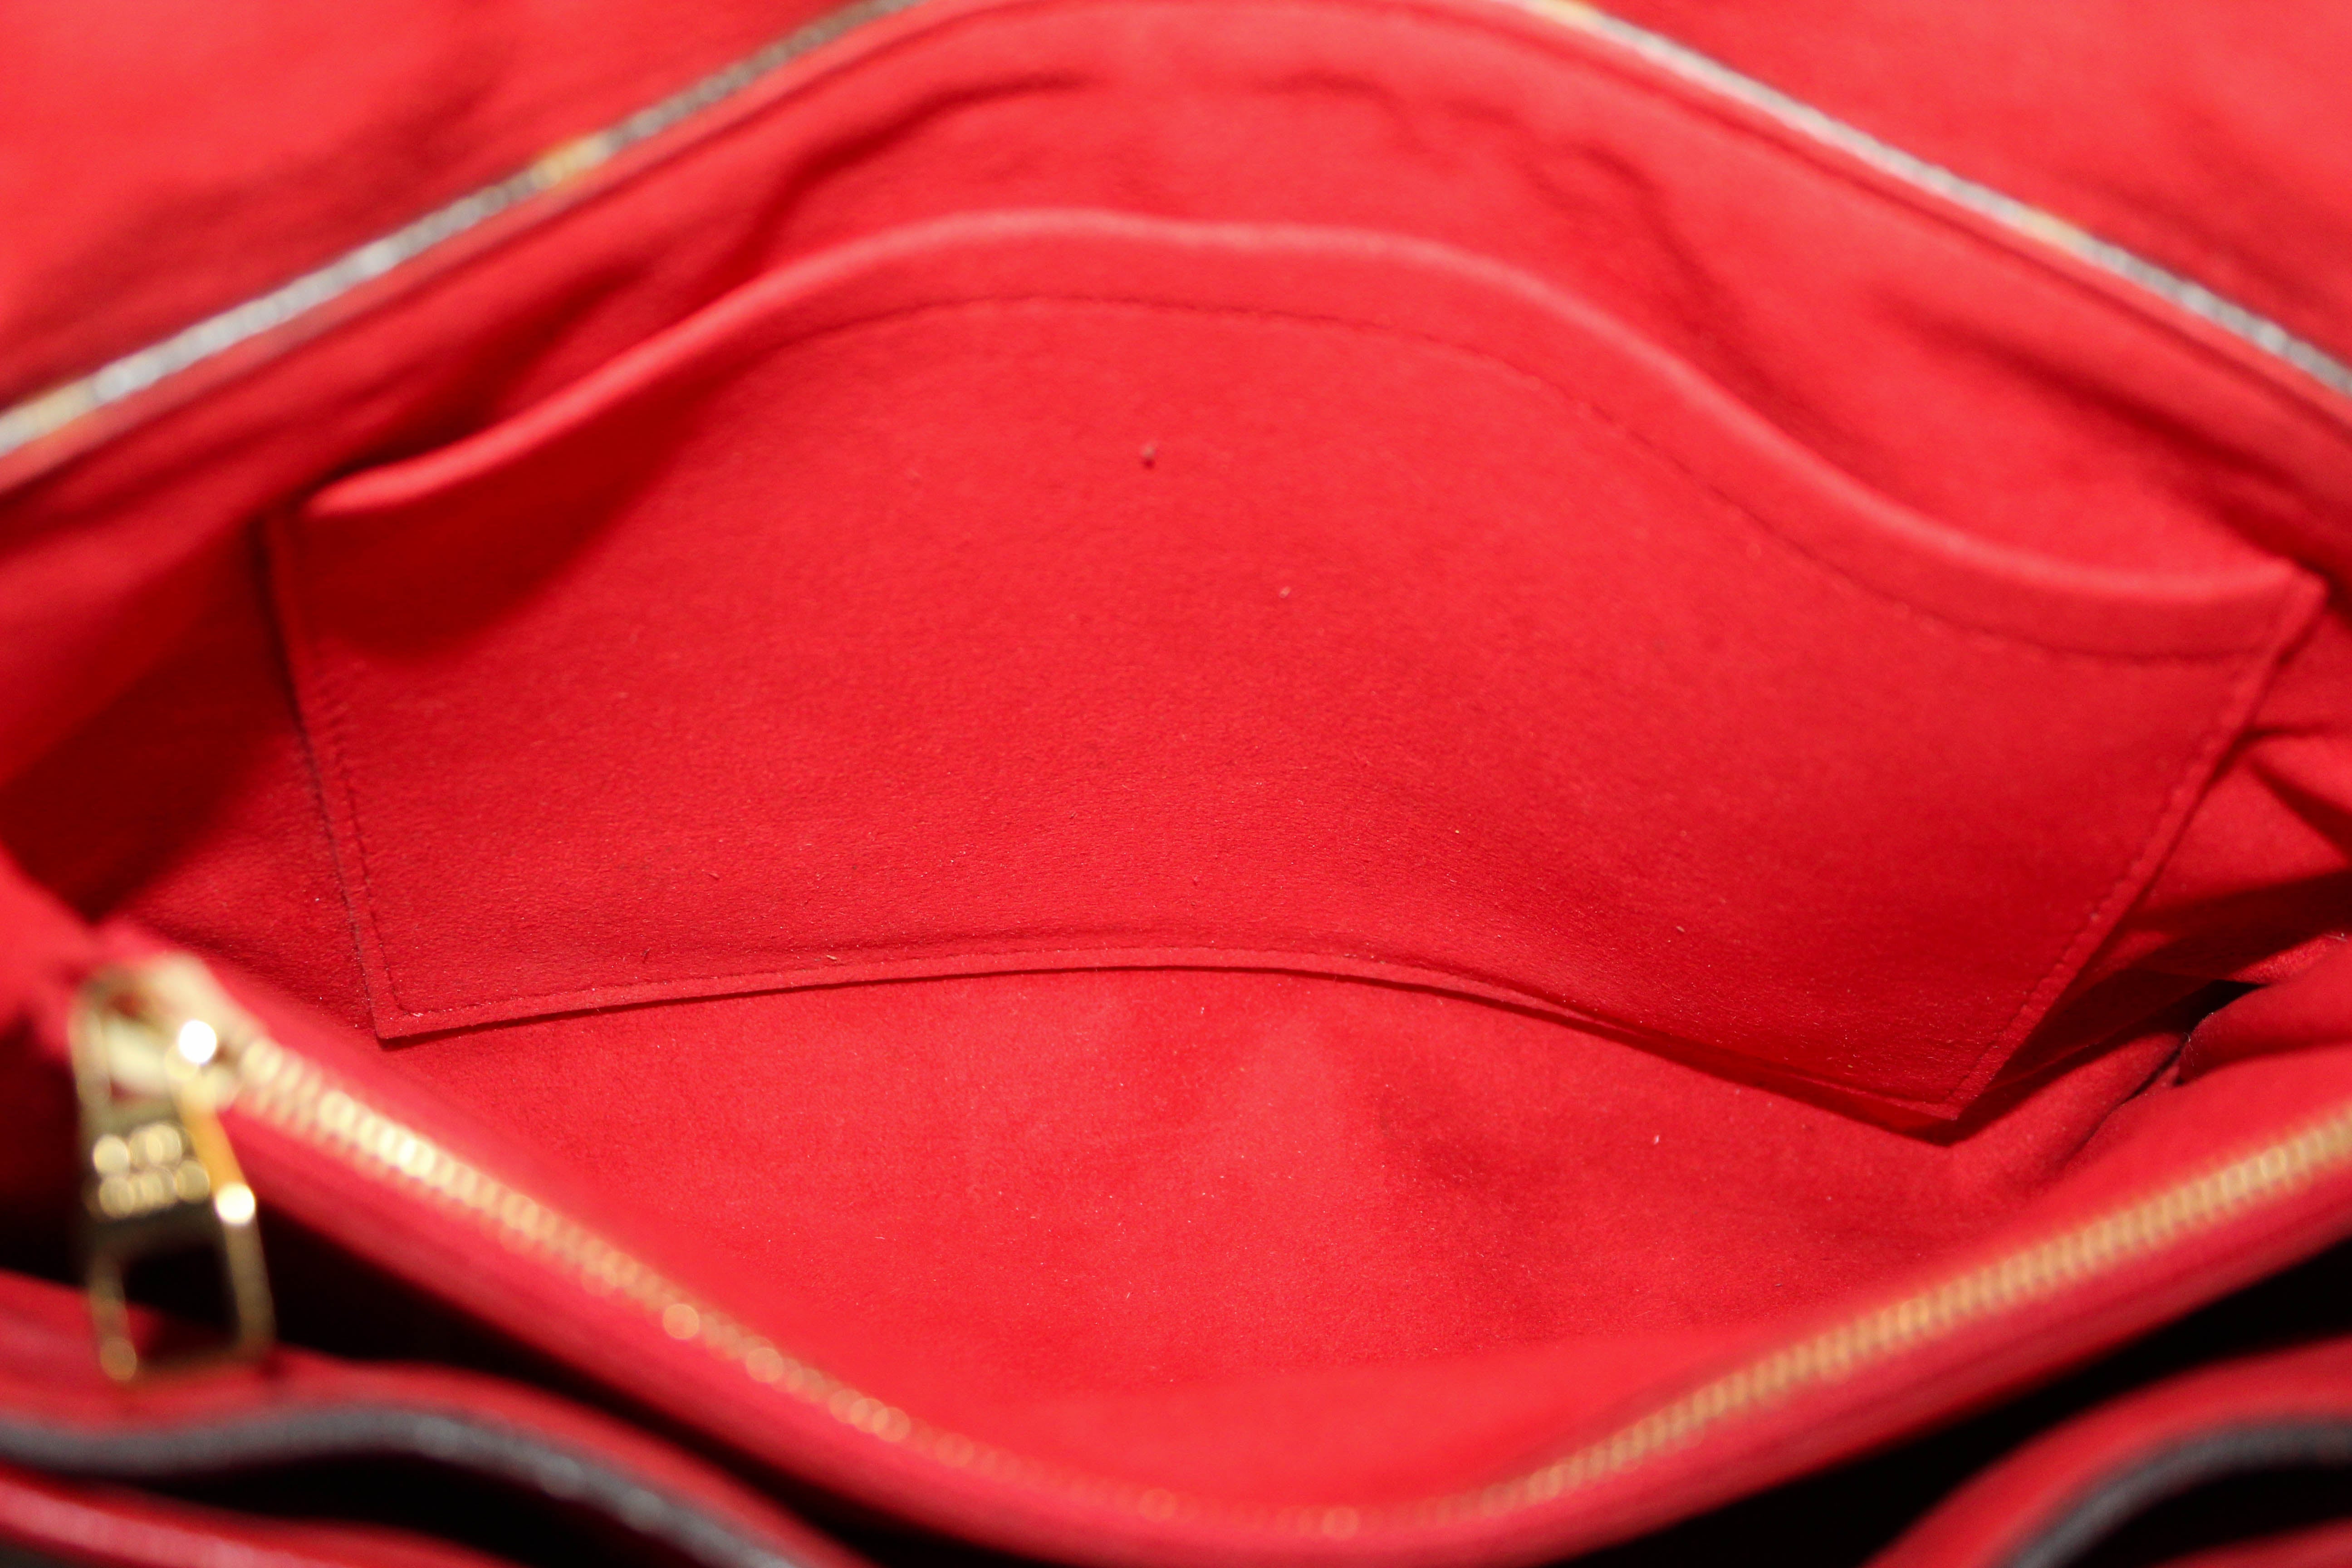 Authentic Louis Vuitton Red Monogram Pallas Chain Shoulder Bag